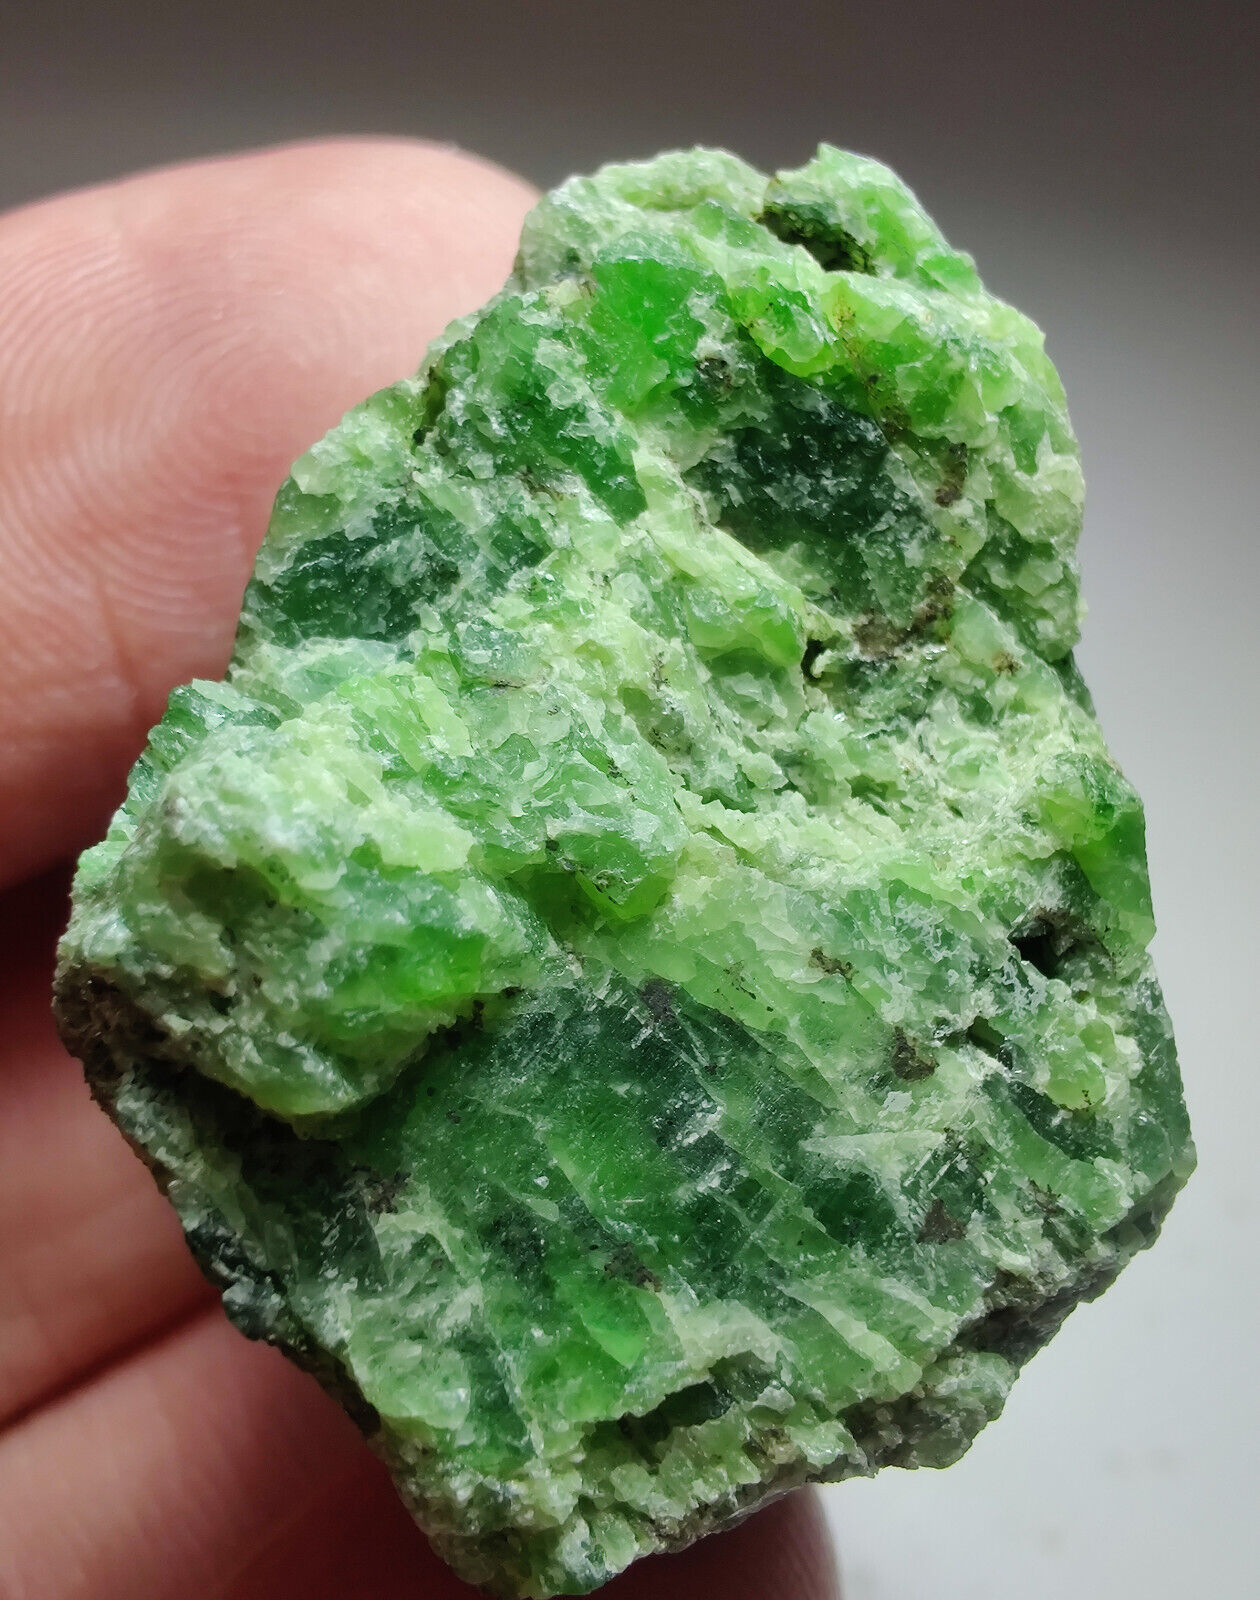 Chrome Diopside crystal. Minas Gerais, Brazil. 35 grams. Video.